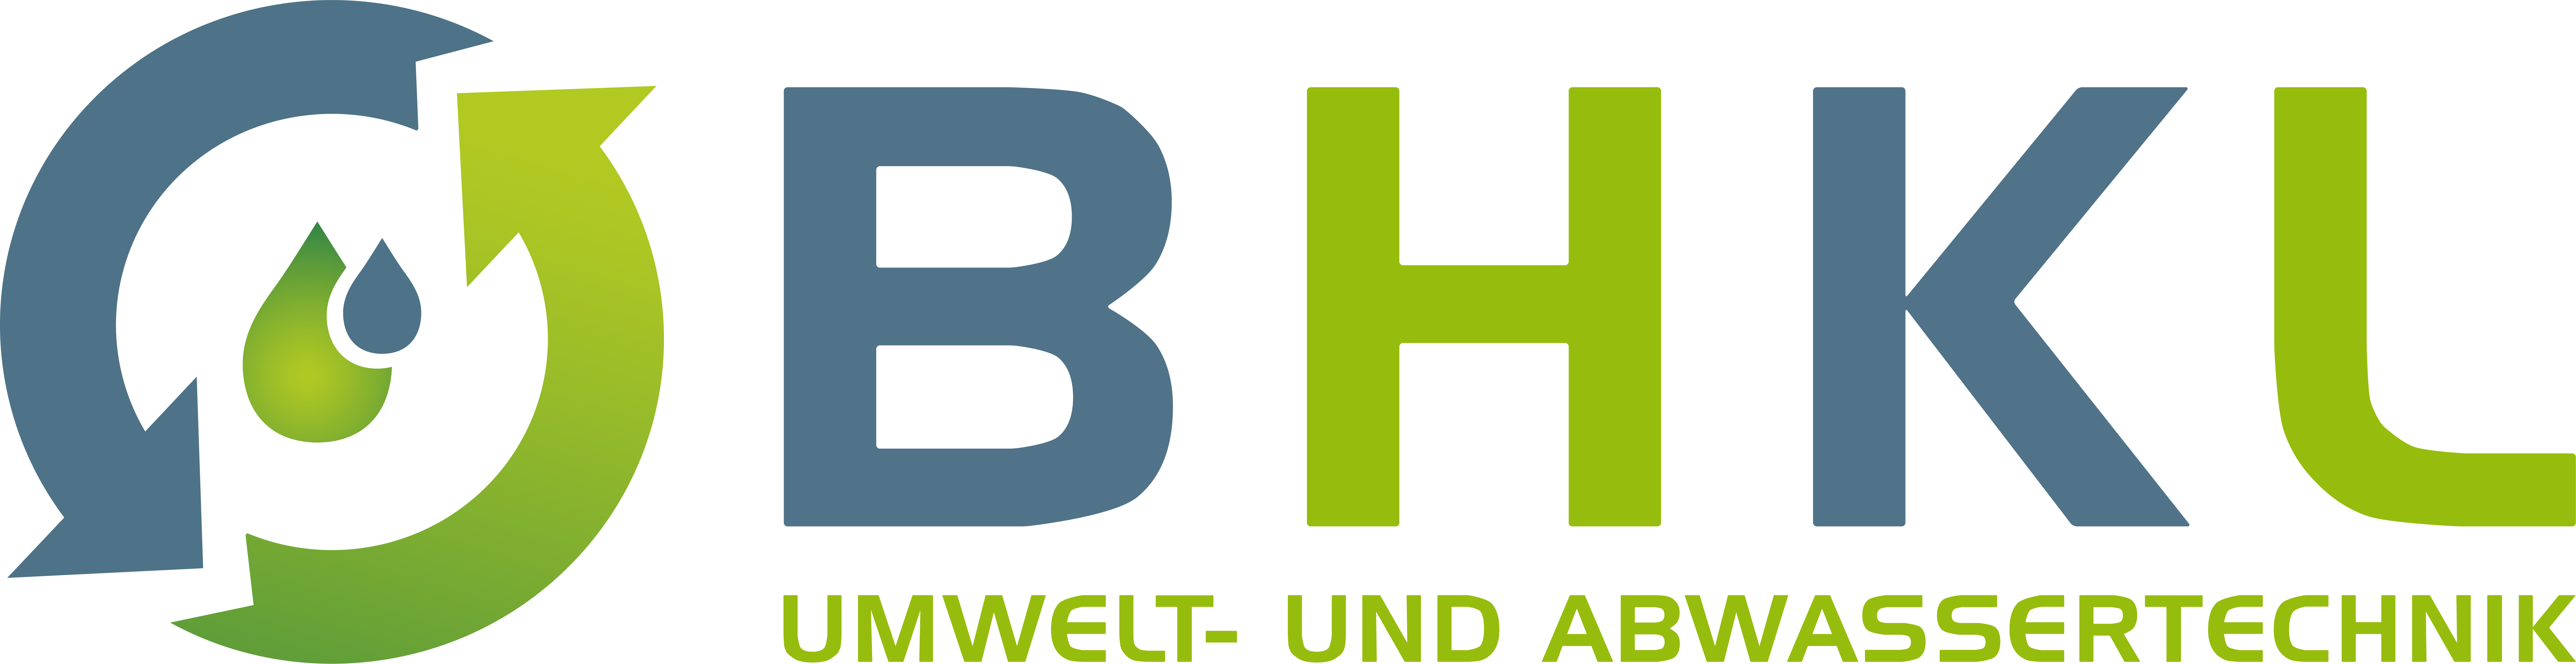 BHKL Umwelt- und Abwassertechnik GmbH